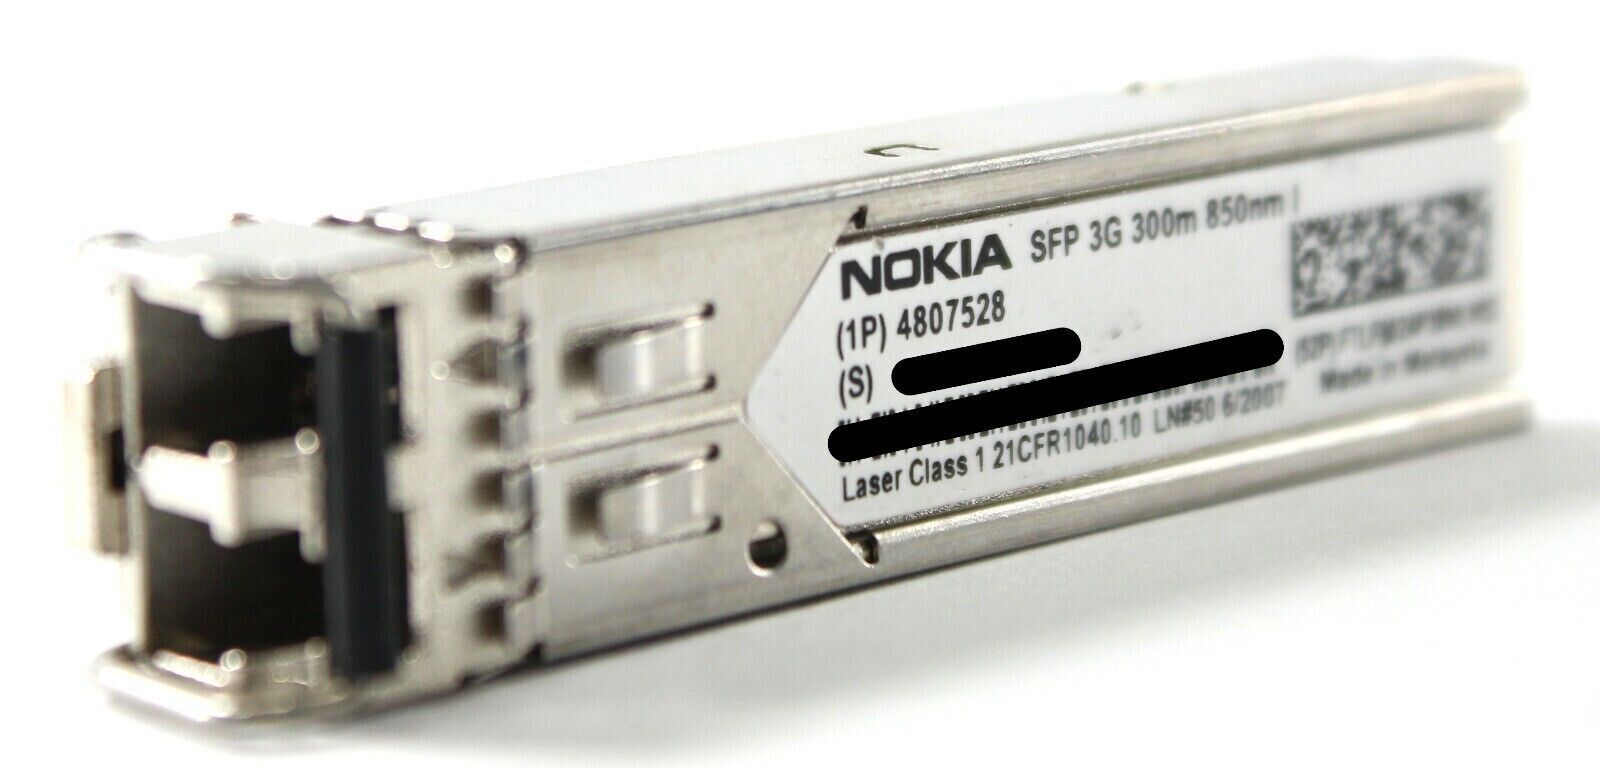 Nokia 4807528 SFP 3G 300m 850nm Transceiver Module